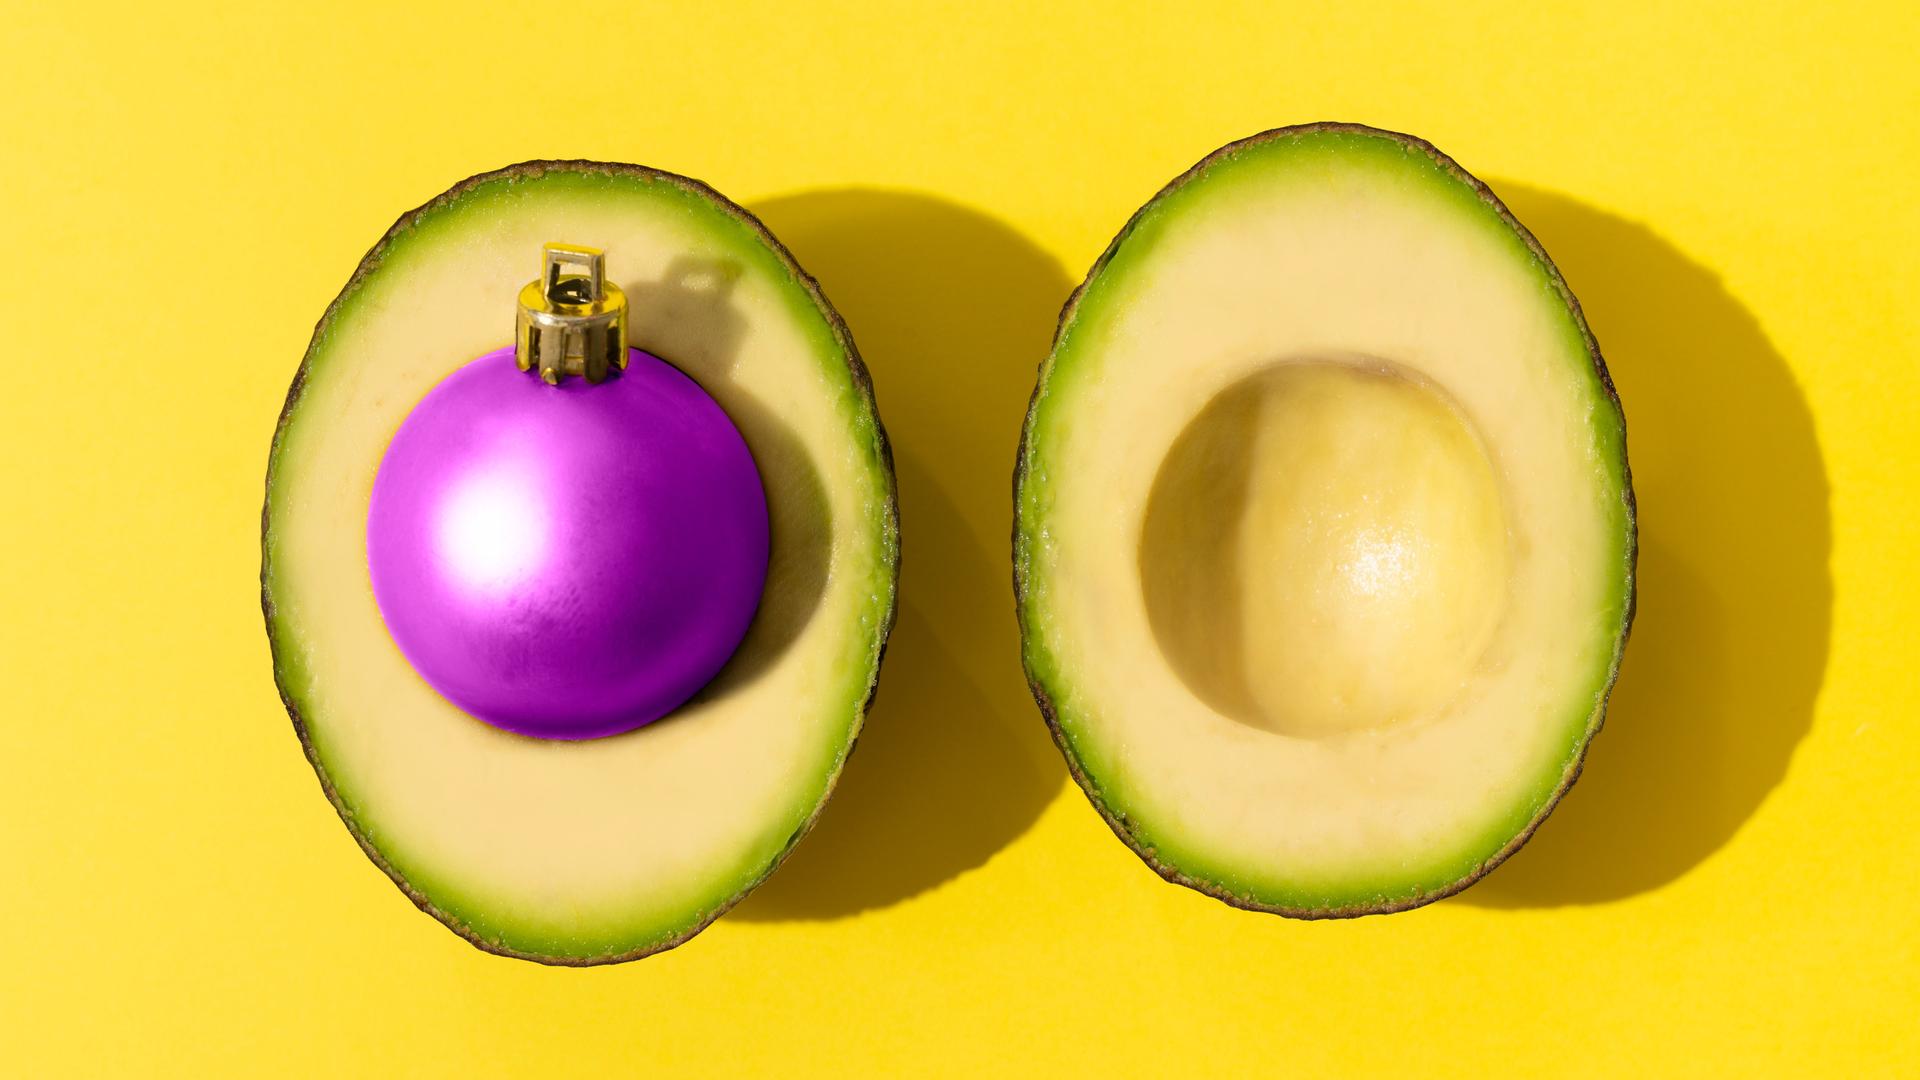 Eine Avocado mit einer violetten Weihnachtskugel als Kern.